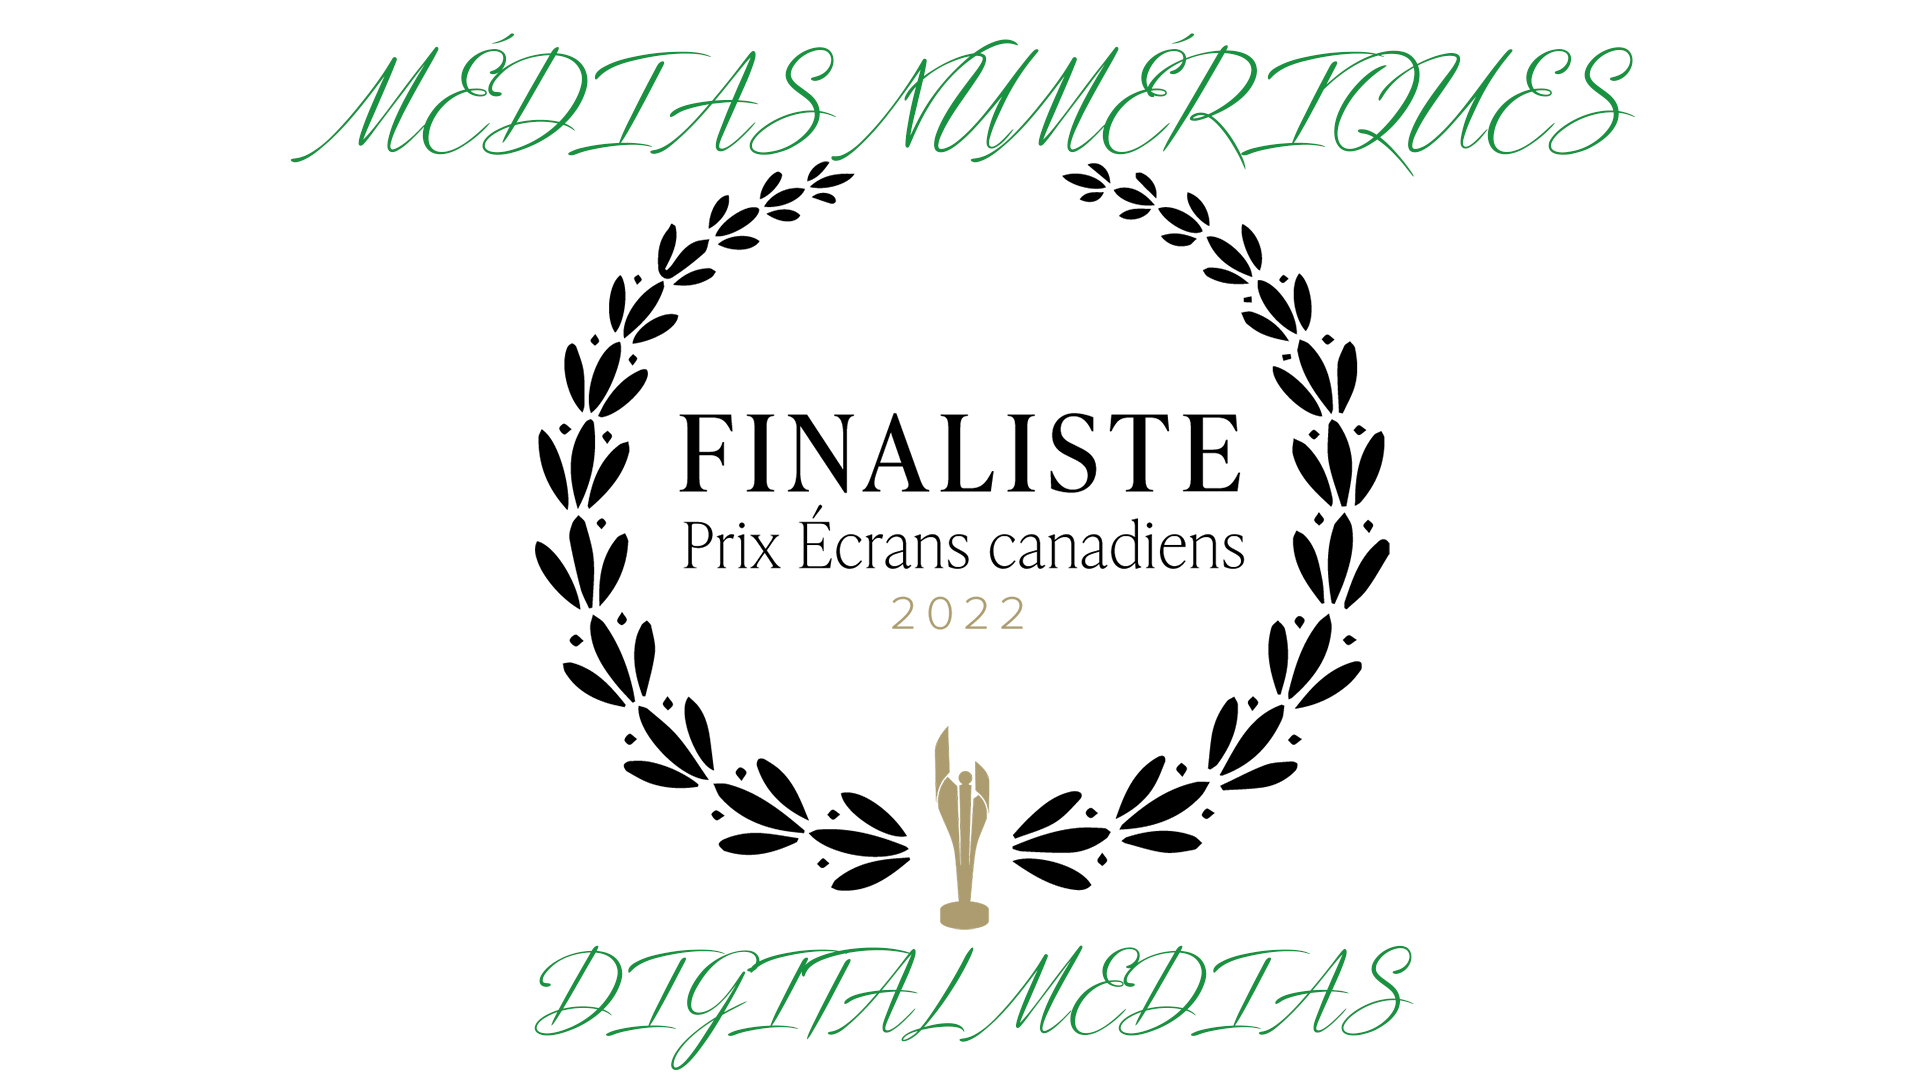 Prix écrans canadiens 2022 - Médias numériques - une